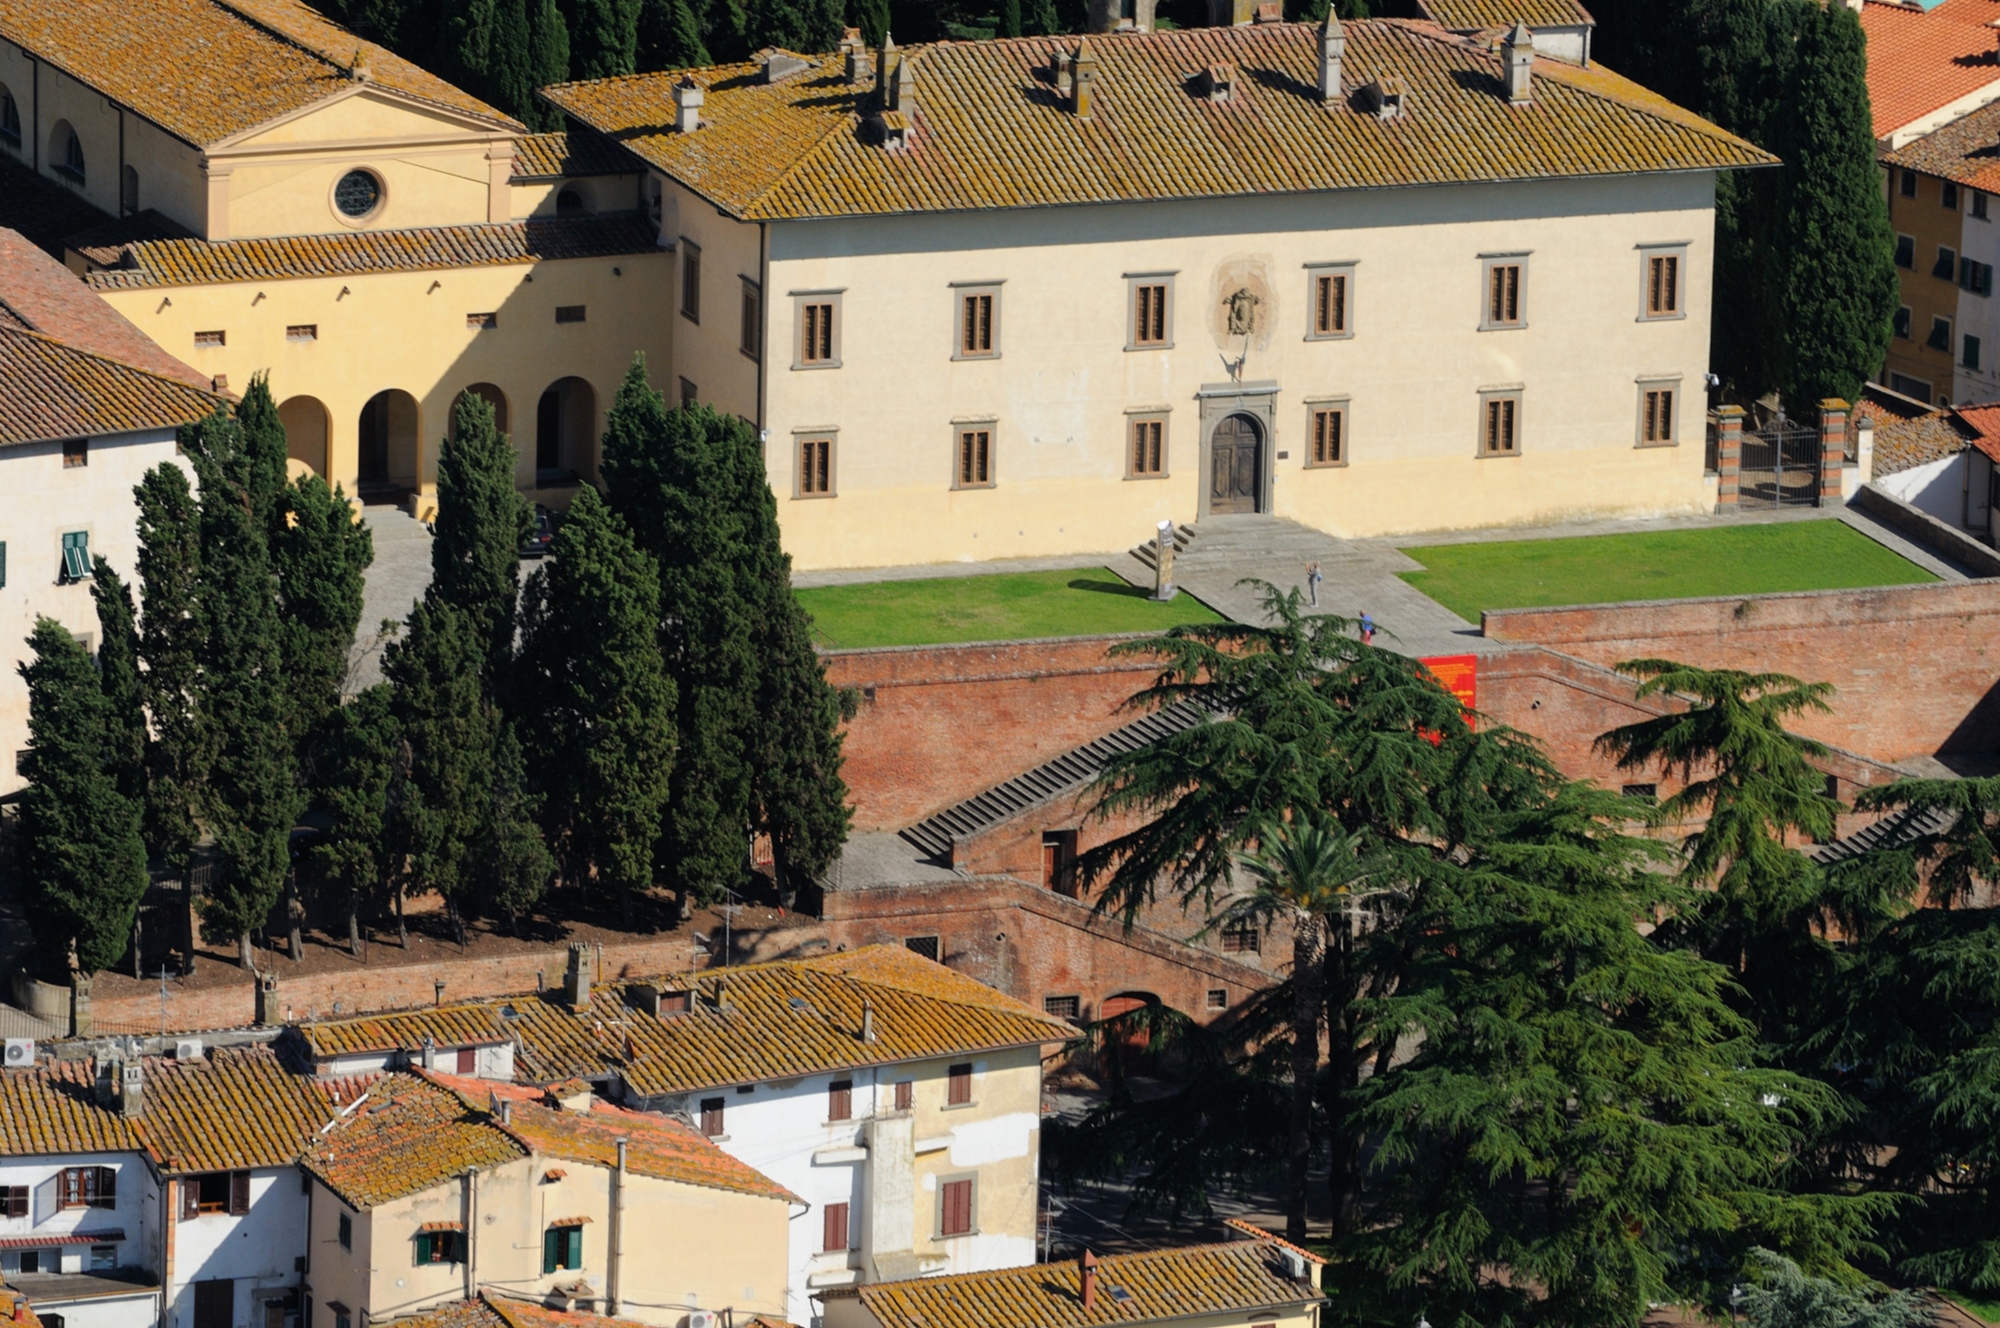 Medici-Villa in Cerreto Guidi